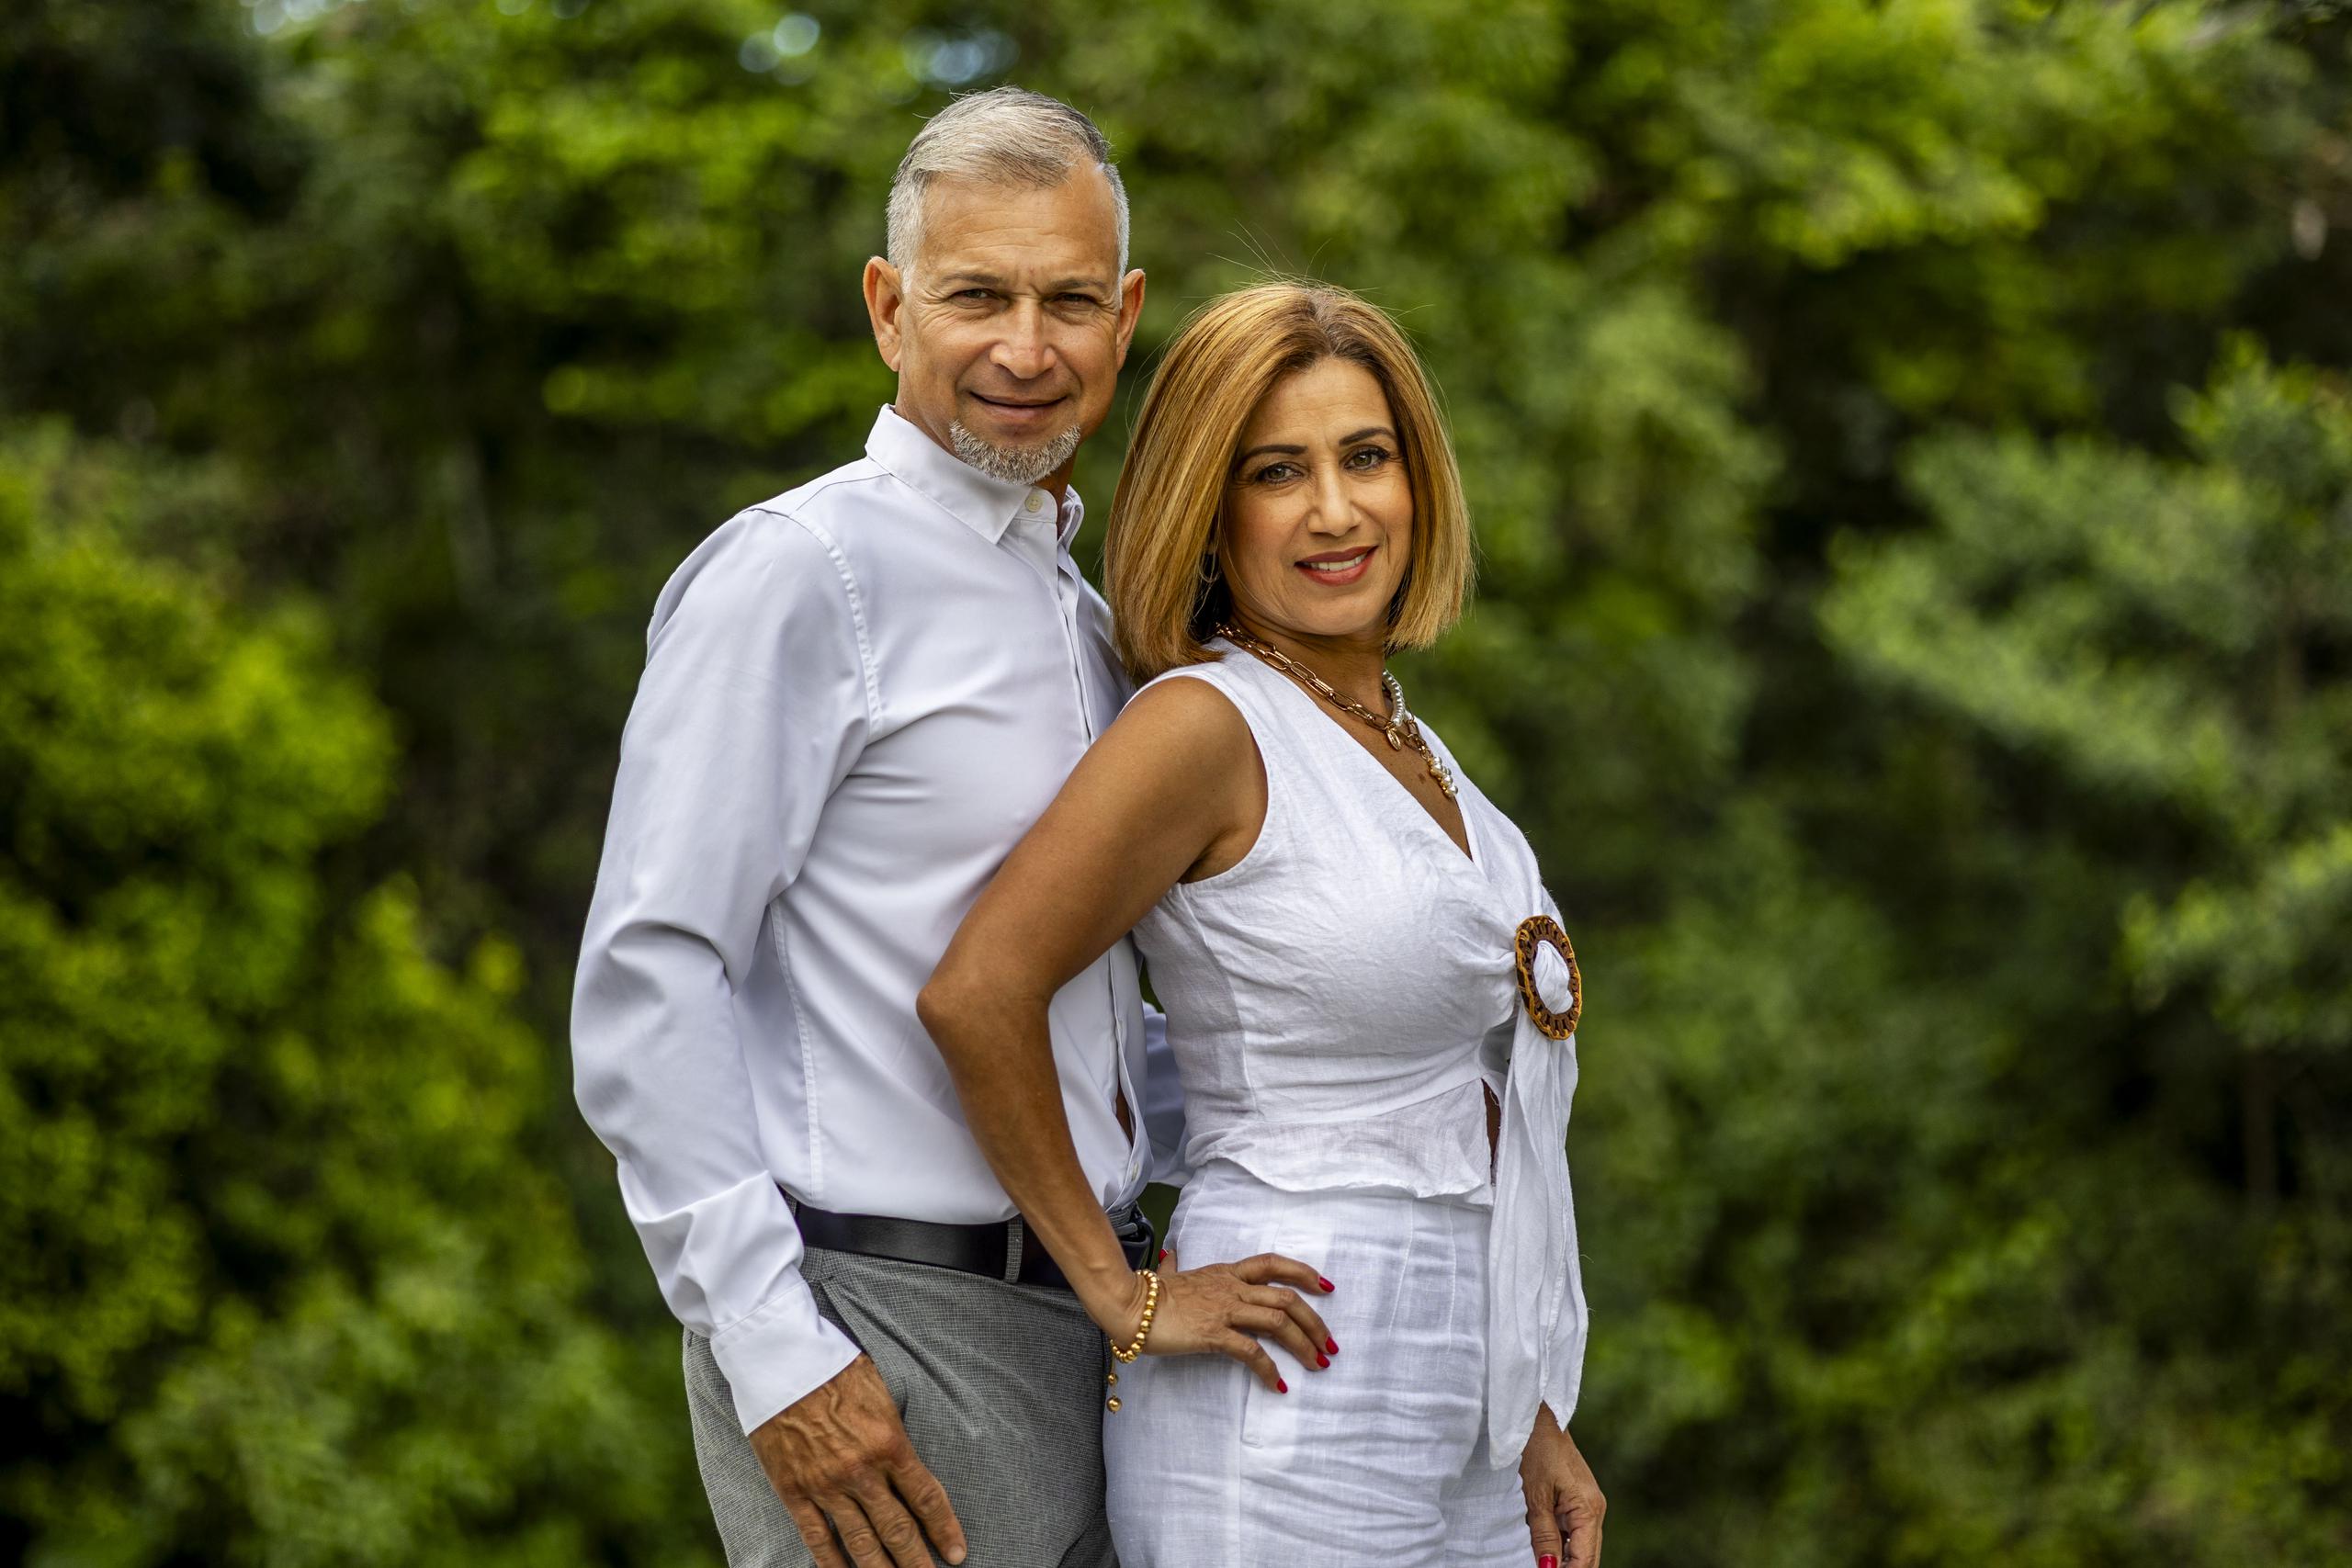 Nelson Santiago Figueroa y Doris Santiago Meléndez disfrutan el éxito en el amor y el negocio familiar tras múltiples vivencias llenas de sacrificio.